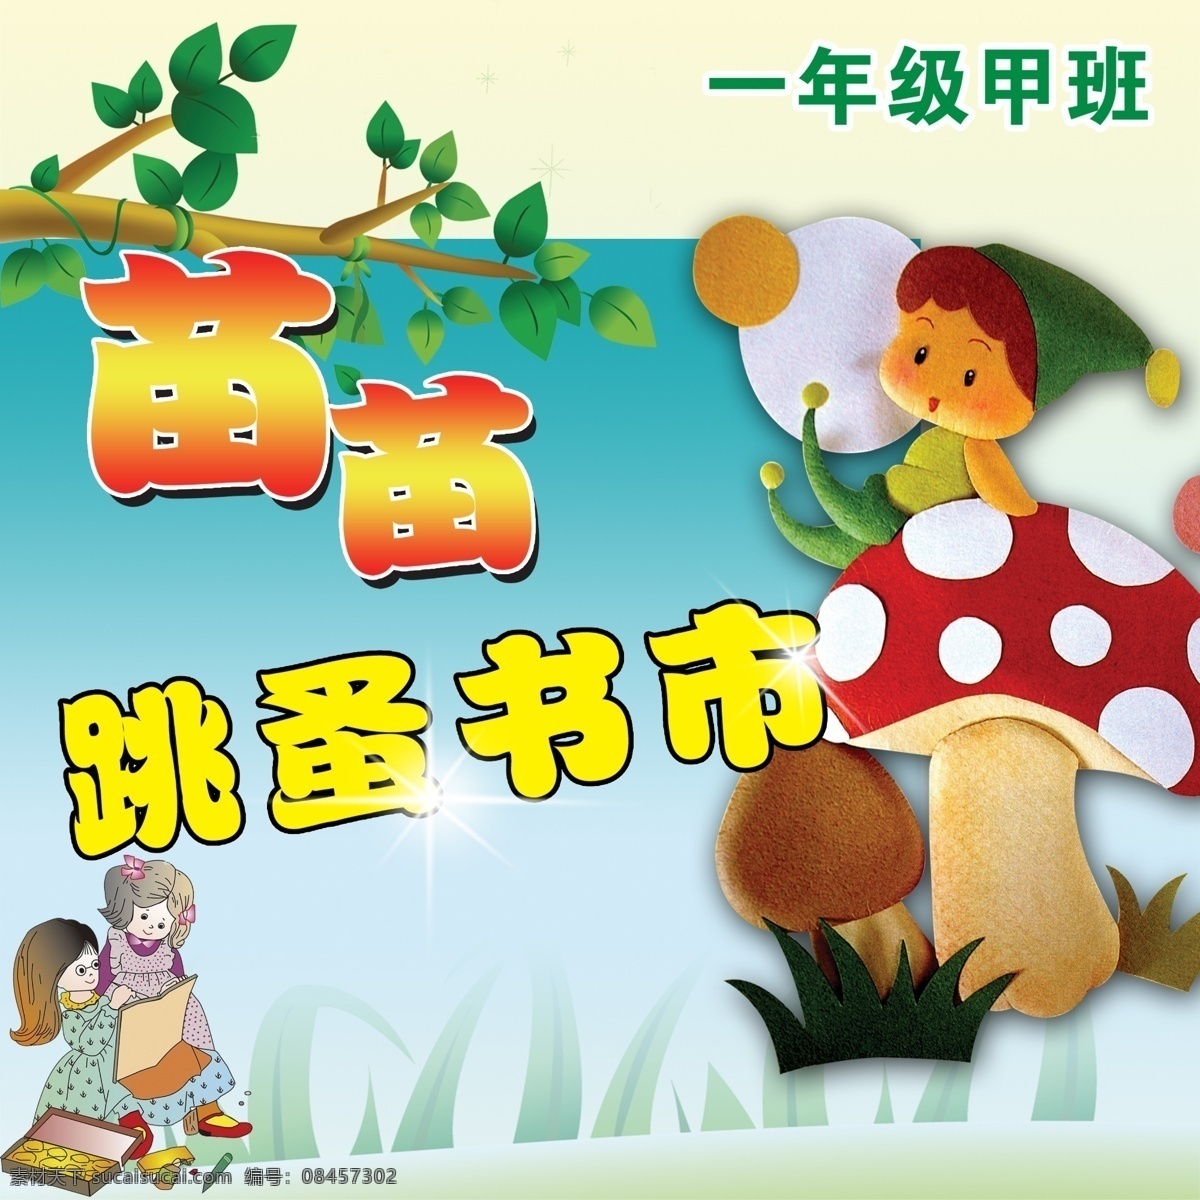 儿童 书市 广告宣传 中文字 蘑菇 树叶 书本 卡通娃娃 蓝色渐变背景 展板模板 广告设计模板 源文件